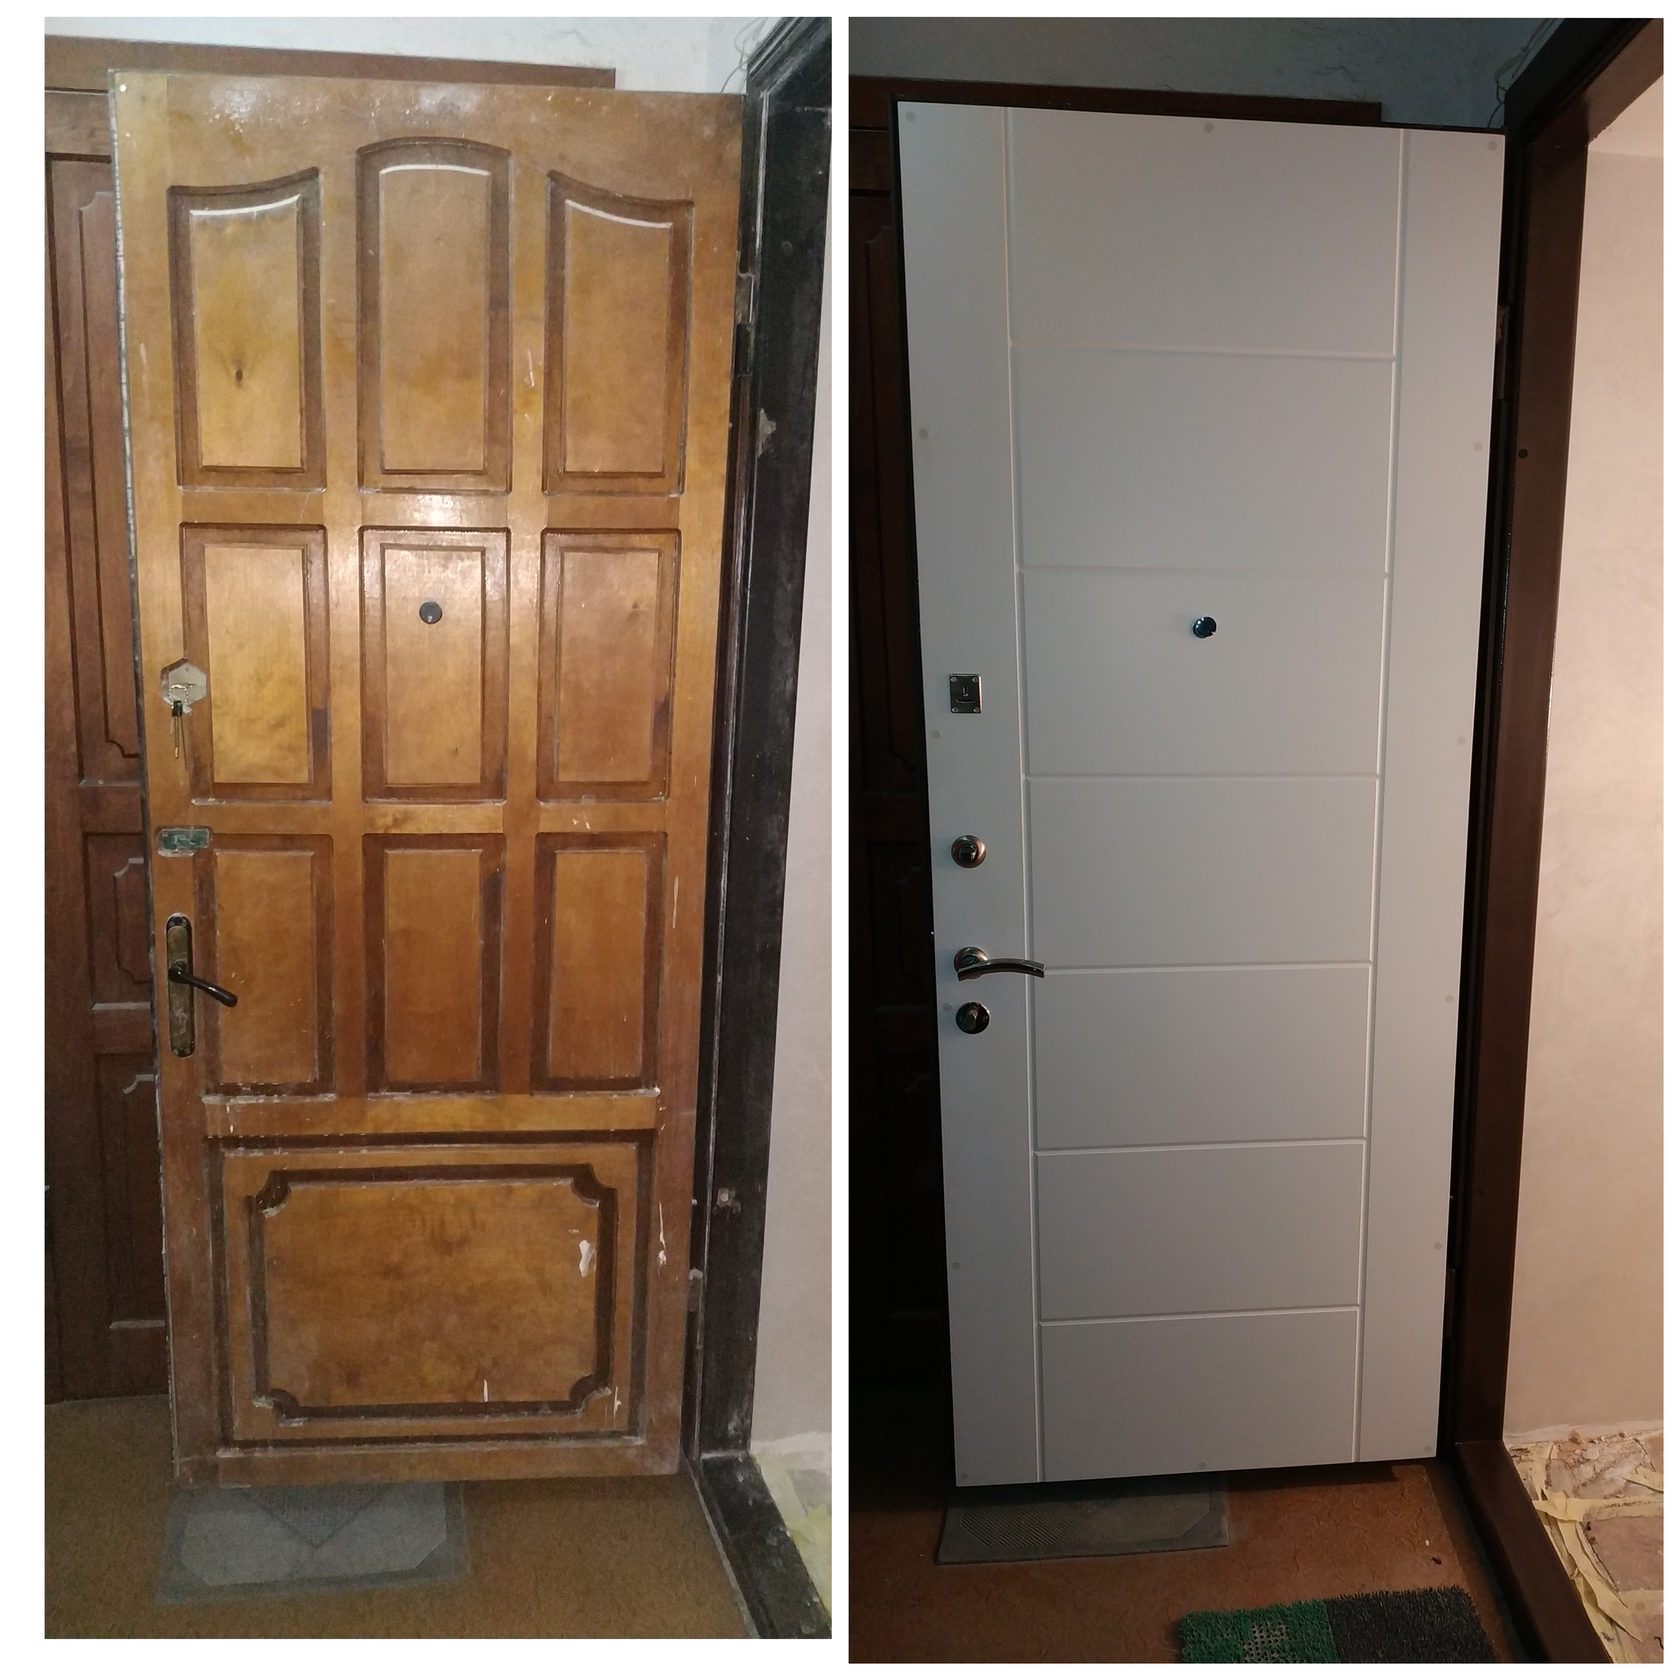 Меняем двери в квартире. Реконструкция старых дверей. Реконструкция старых деревянных дверей. Старая железная дверь. Обшивка входных дверей МДФ.